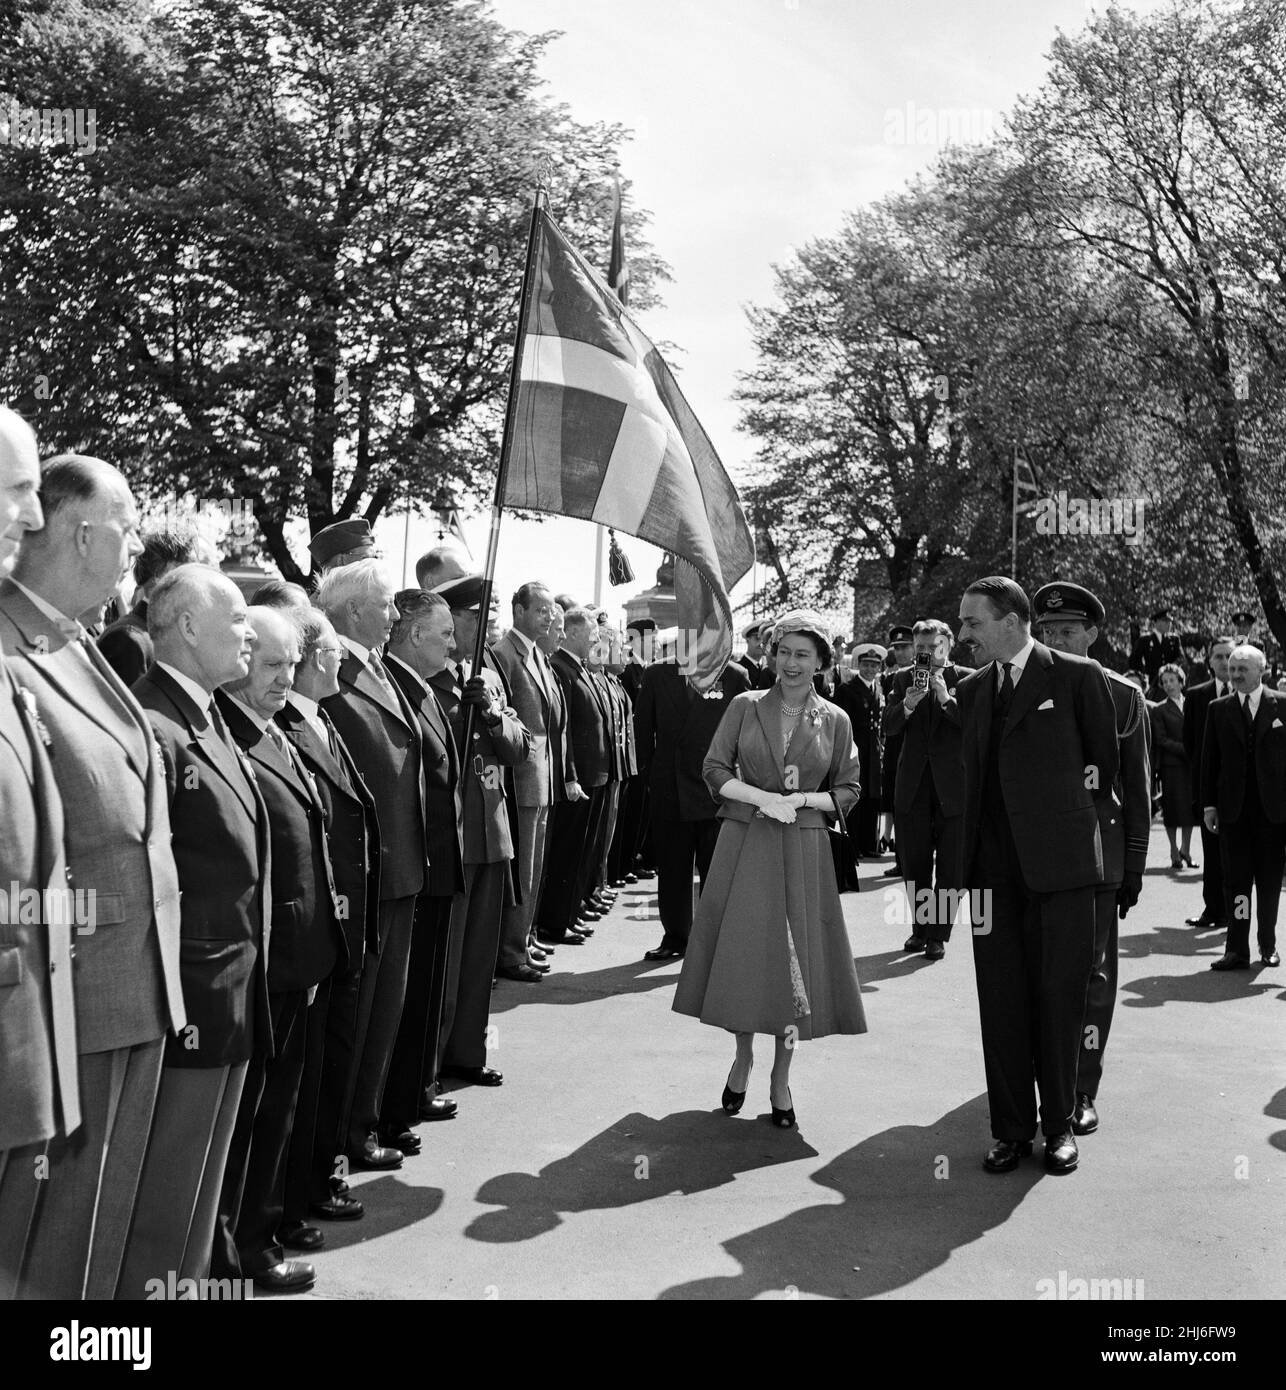 Königin Elizabeth II. Und Prinz Philip, Herzog von Edinburgh, besuchen Dänemark. Die Königin bei einer Parade ehemaliger Soldaten in der englischen Kirche St. Alban's in Kopenhagen. Mit ihr ist der britische Botschafter Sir Roderick Barclay. 23rd Mai 1957. Stockfoto